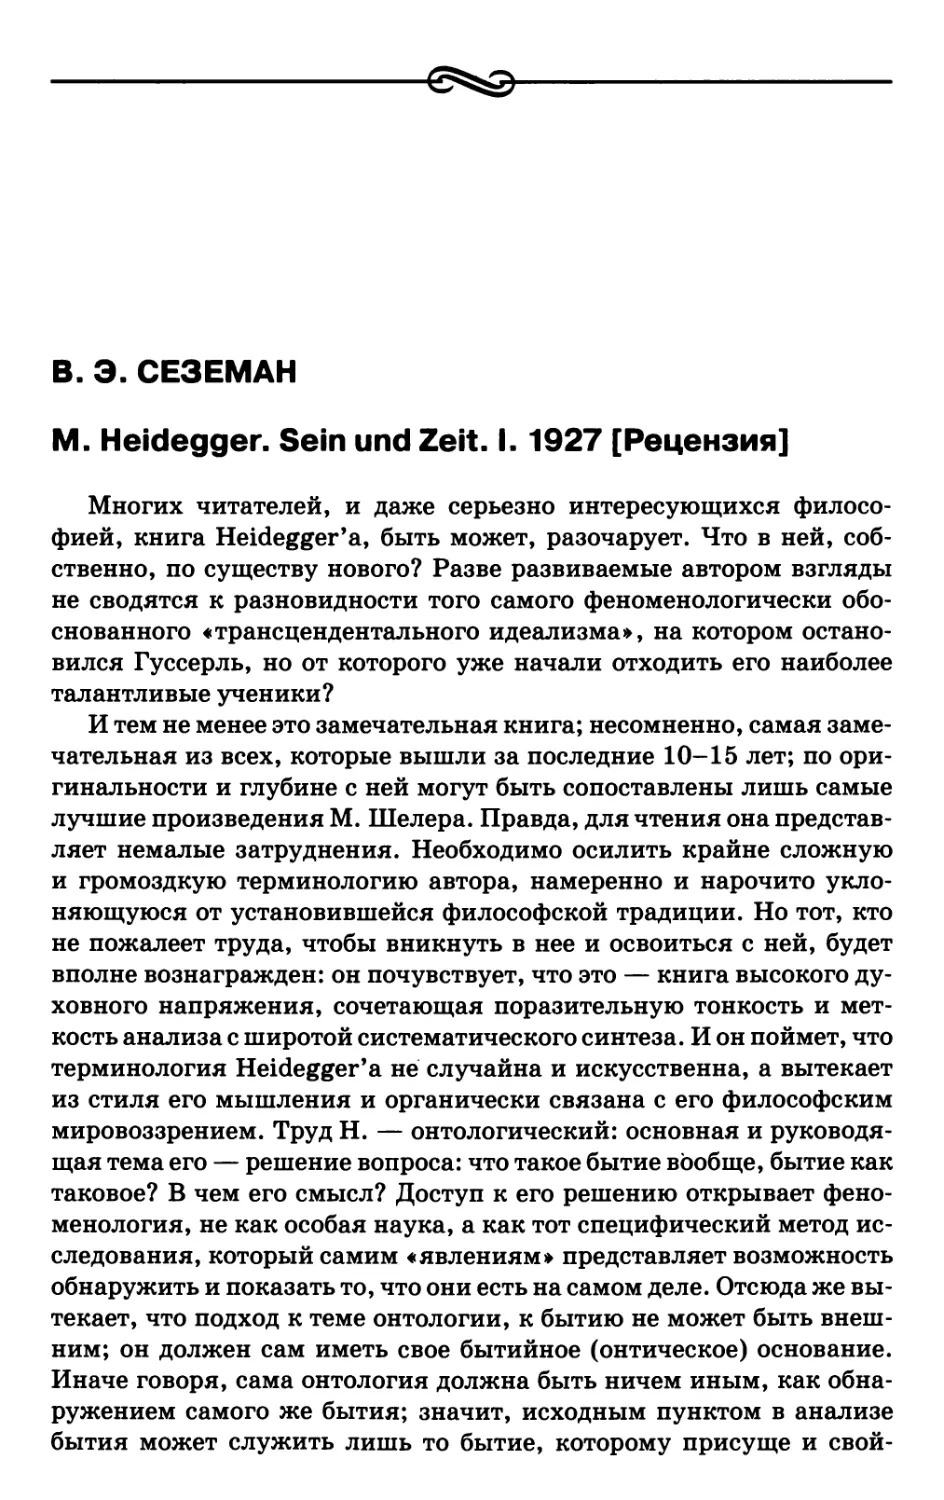 Сеземан В.Э. M. Heidegger. Sein und Zeit. I. 1927 [Рецензия]